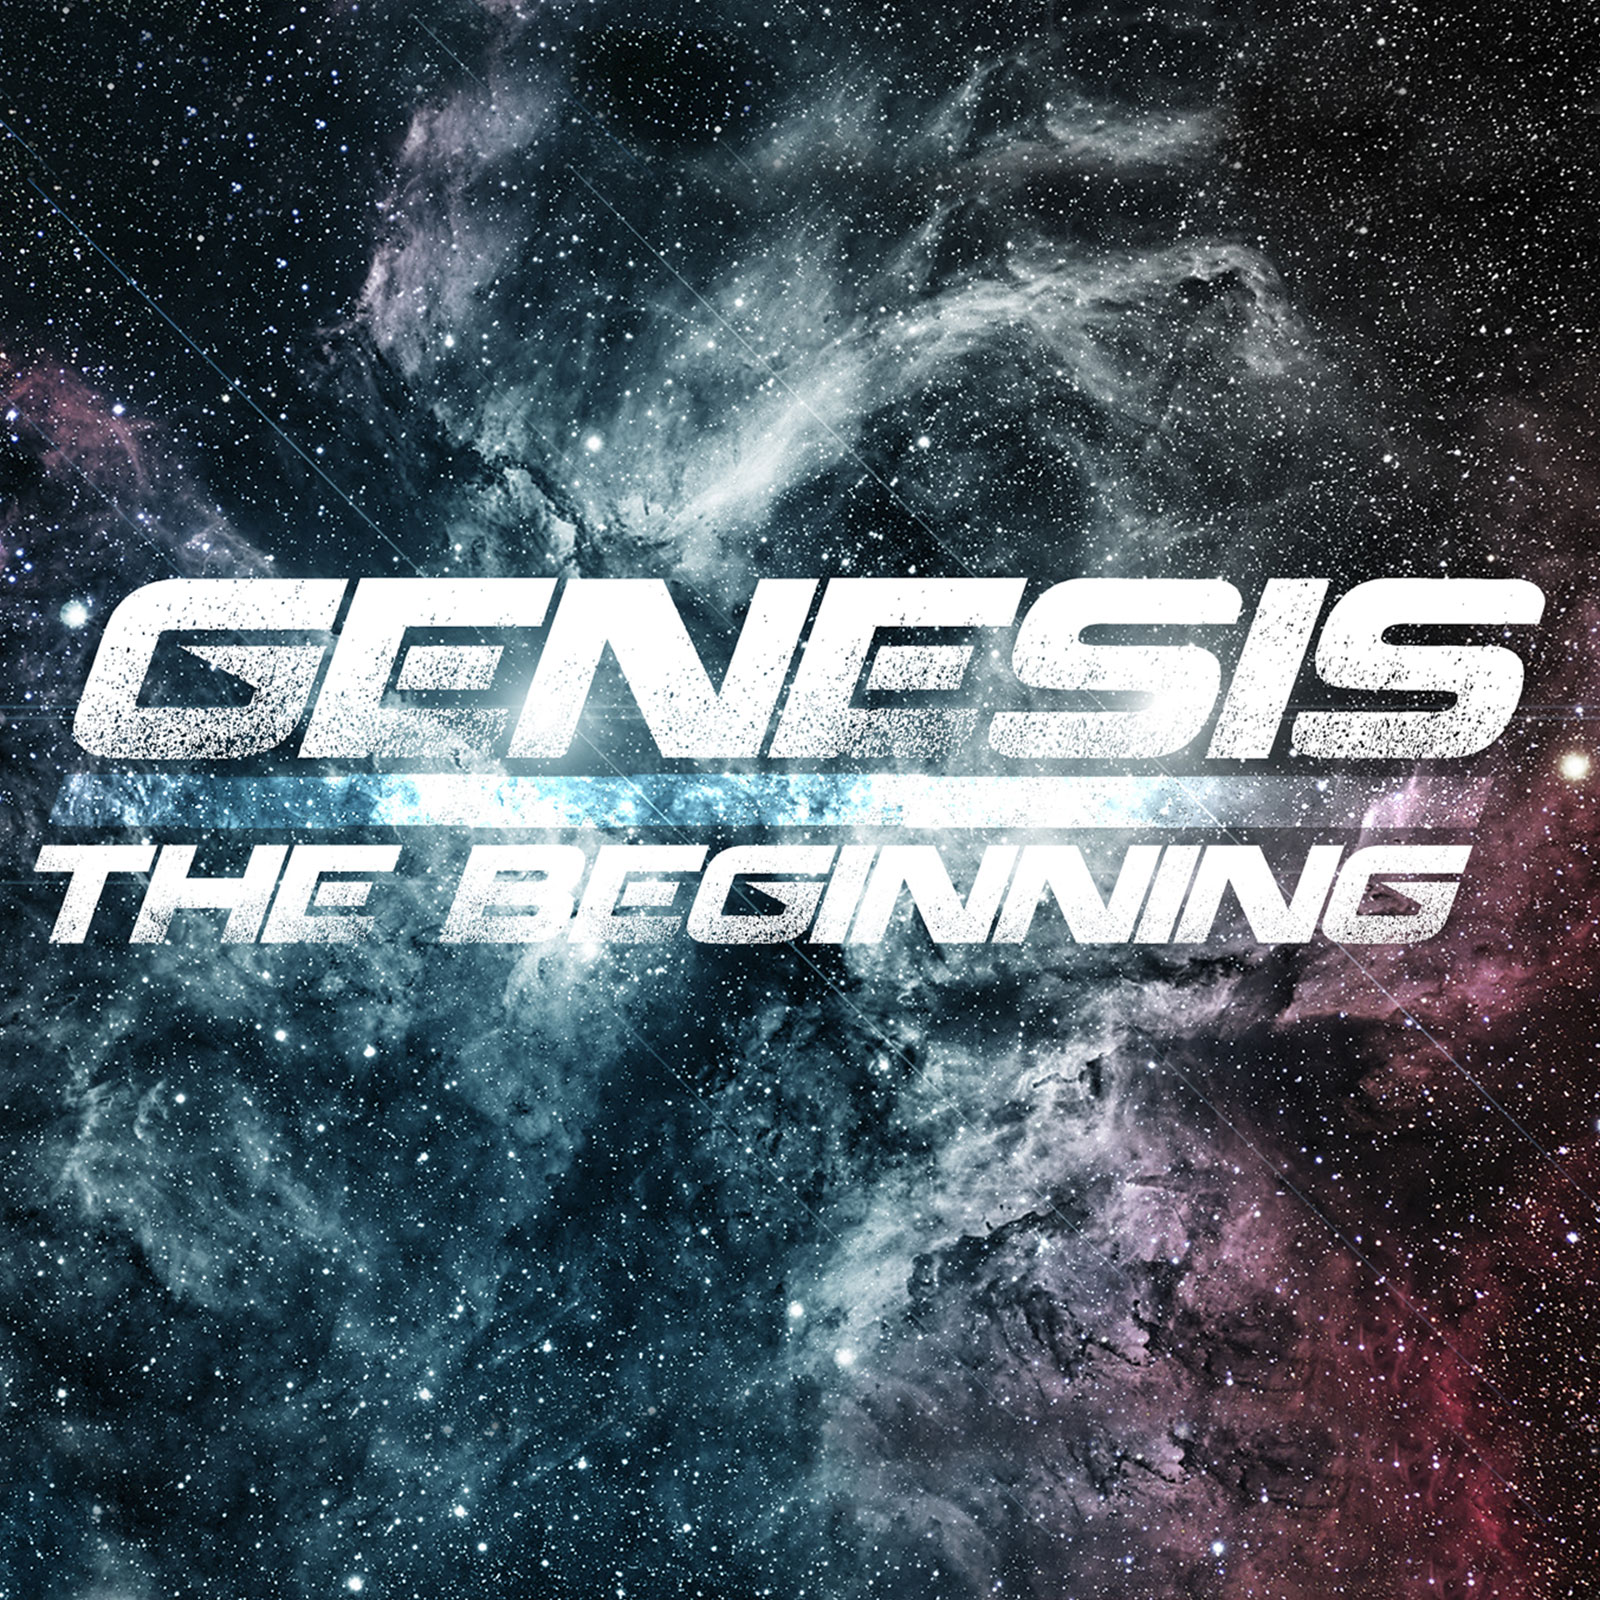 Genesis Part 2